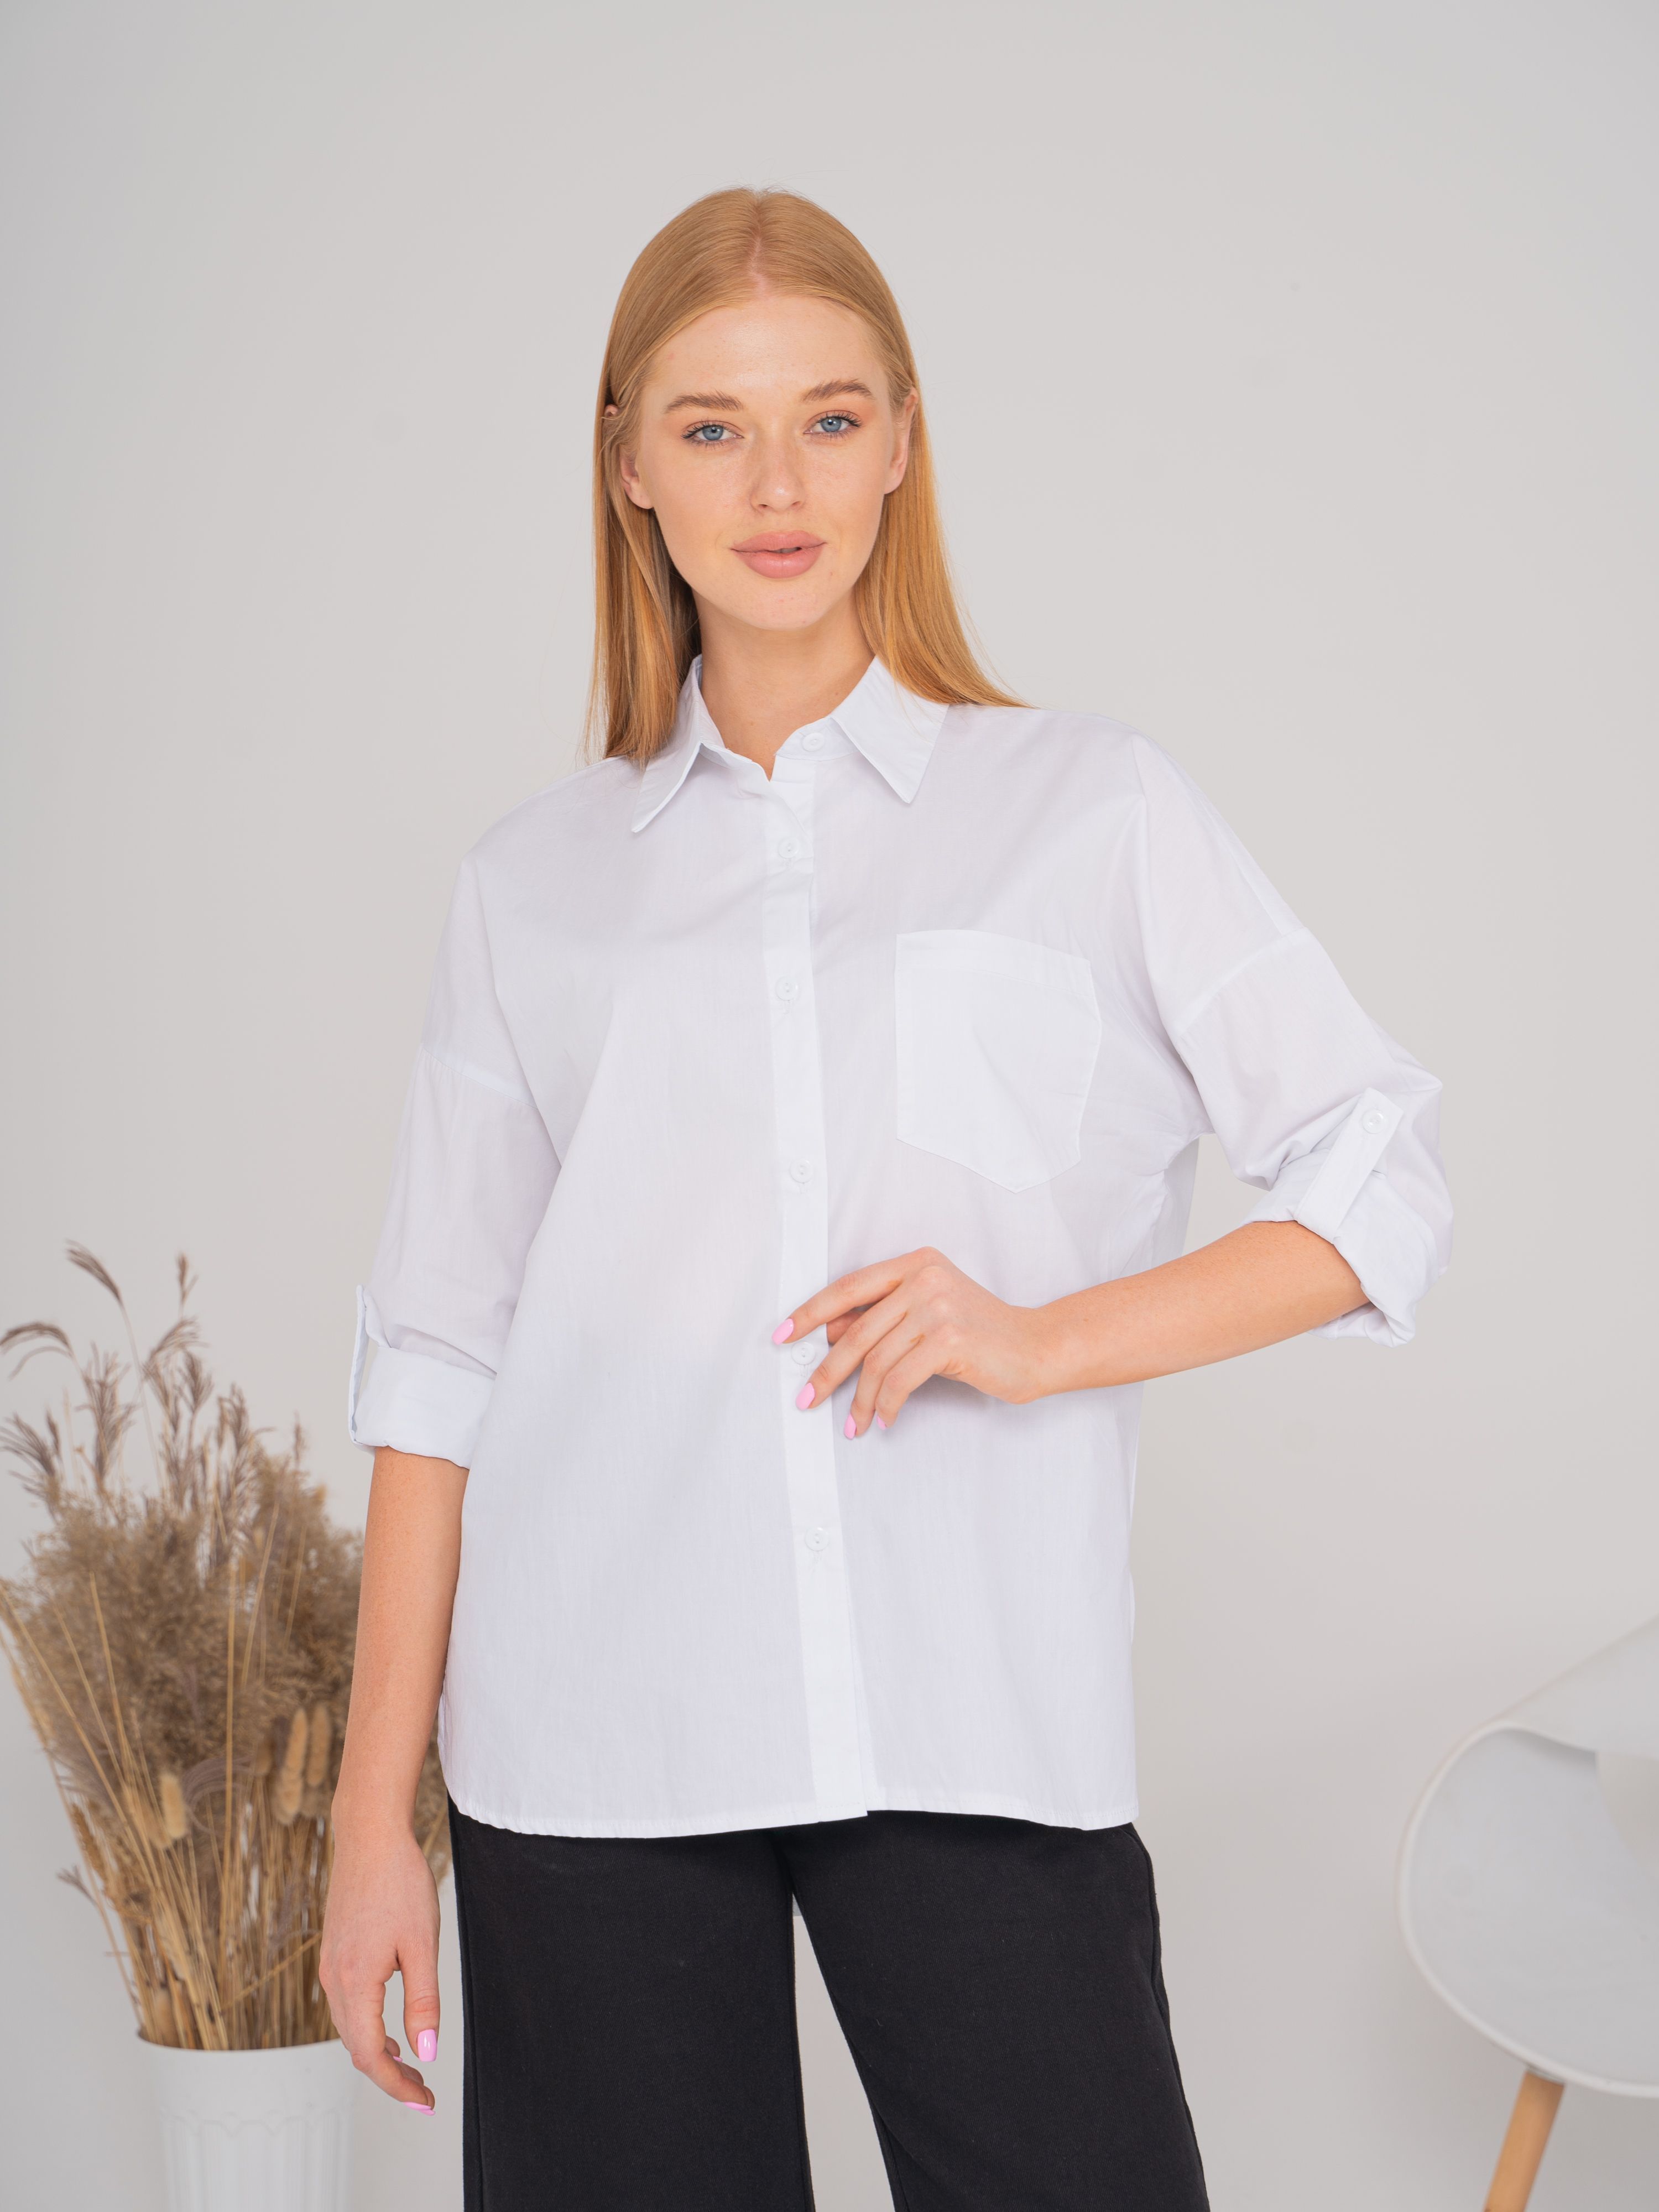 Рубашка женская ebo style КЗ-033 белая 42-52 RU